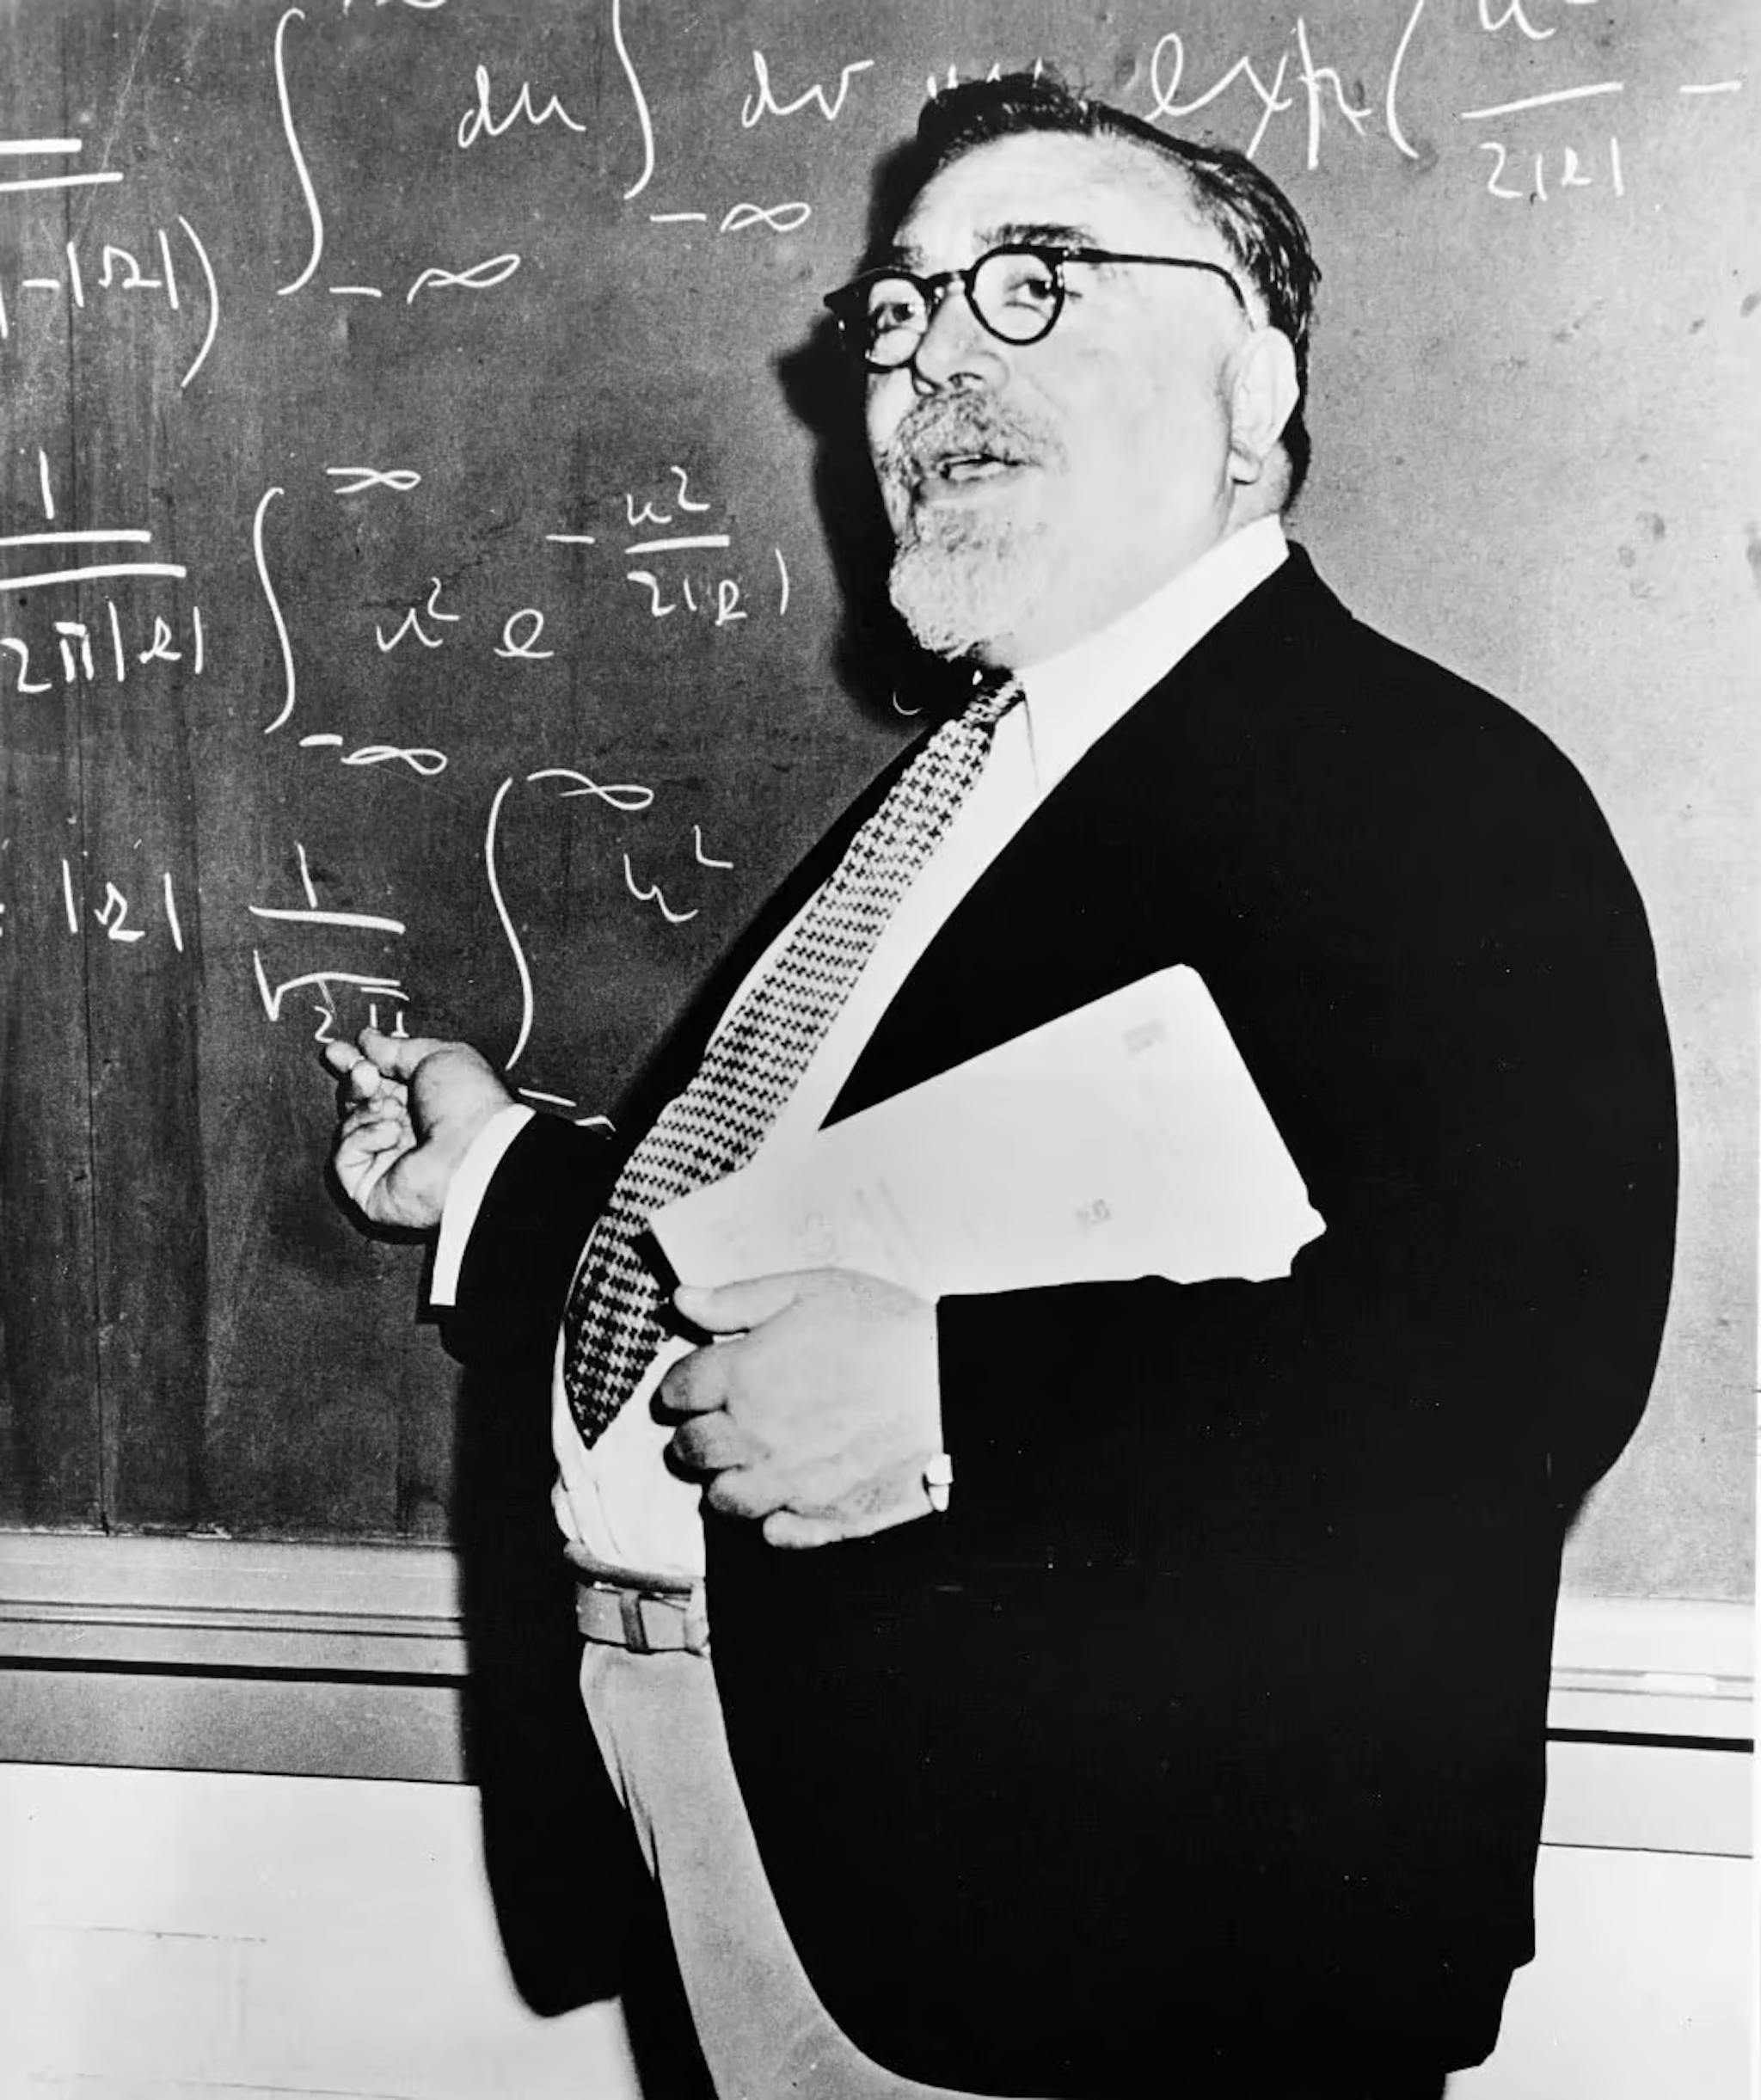 Norbert Wiener (1894-1964) fez contribuições significativas para processos estocásticos, engenharia eletrônica e sistemas de controle. Ele originou a cibernética e teorizou que os mecanismos de feedback levam a um comportamento inteligente, estabelecendo as bases para a IA moderna.